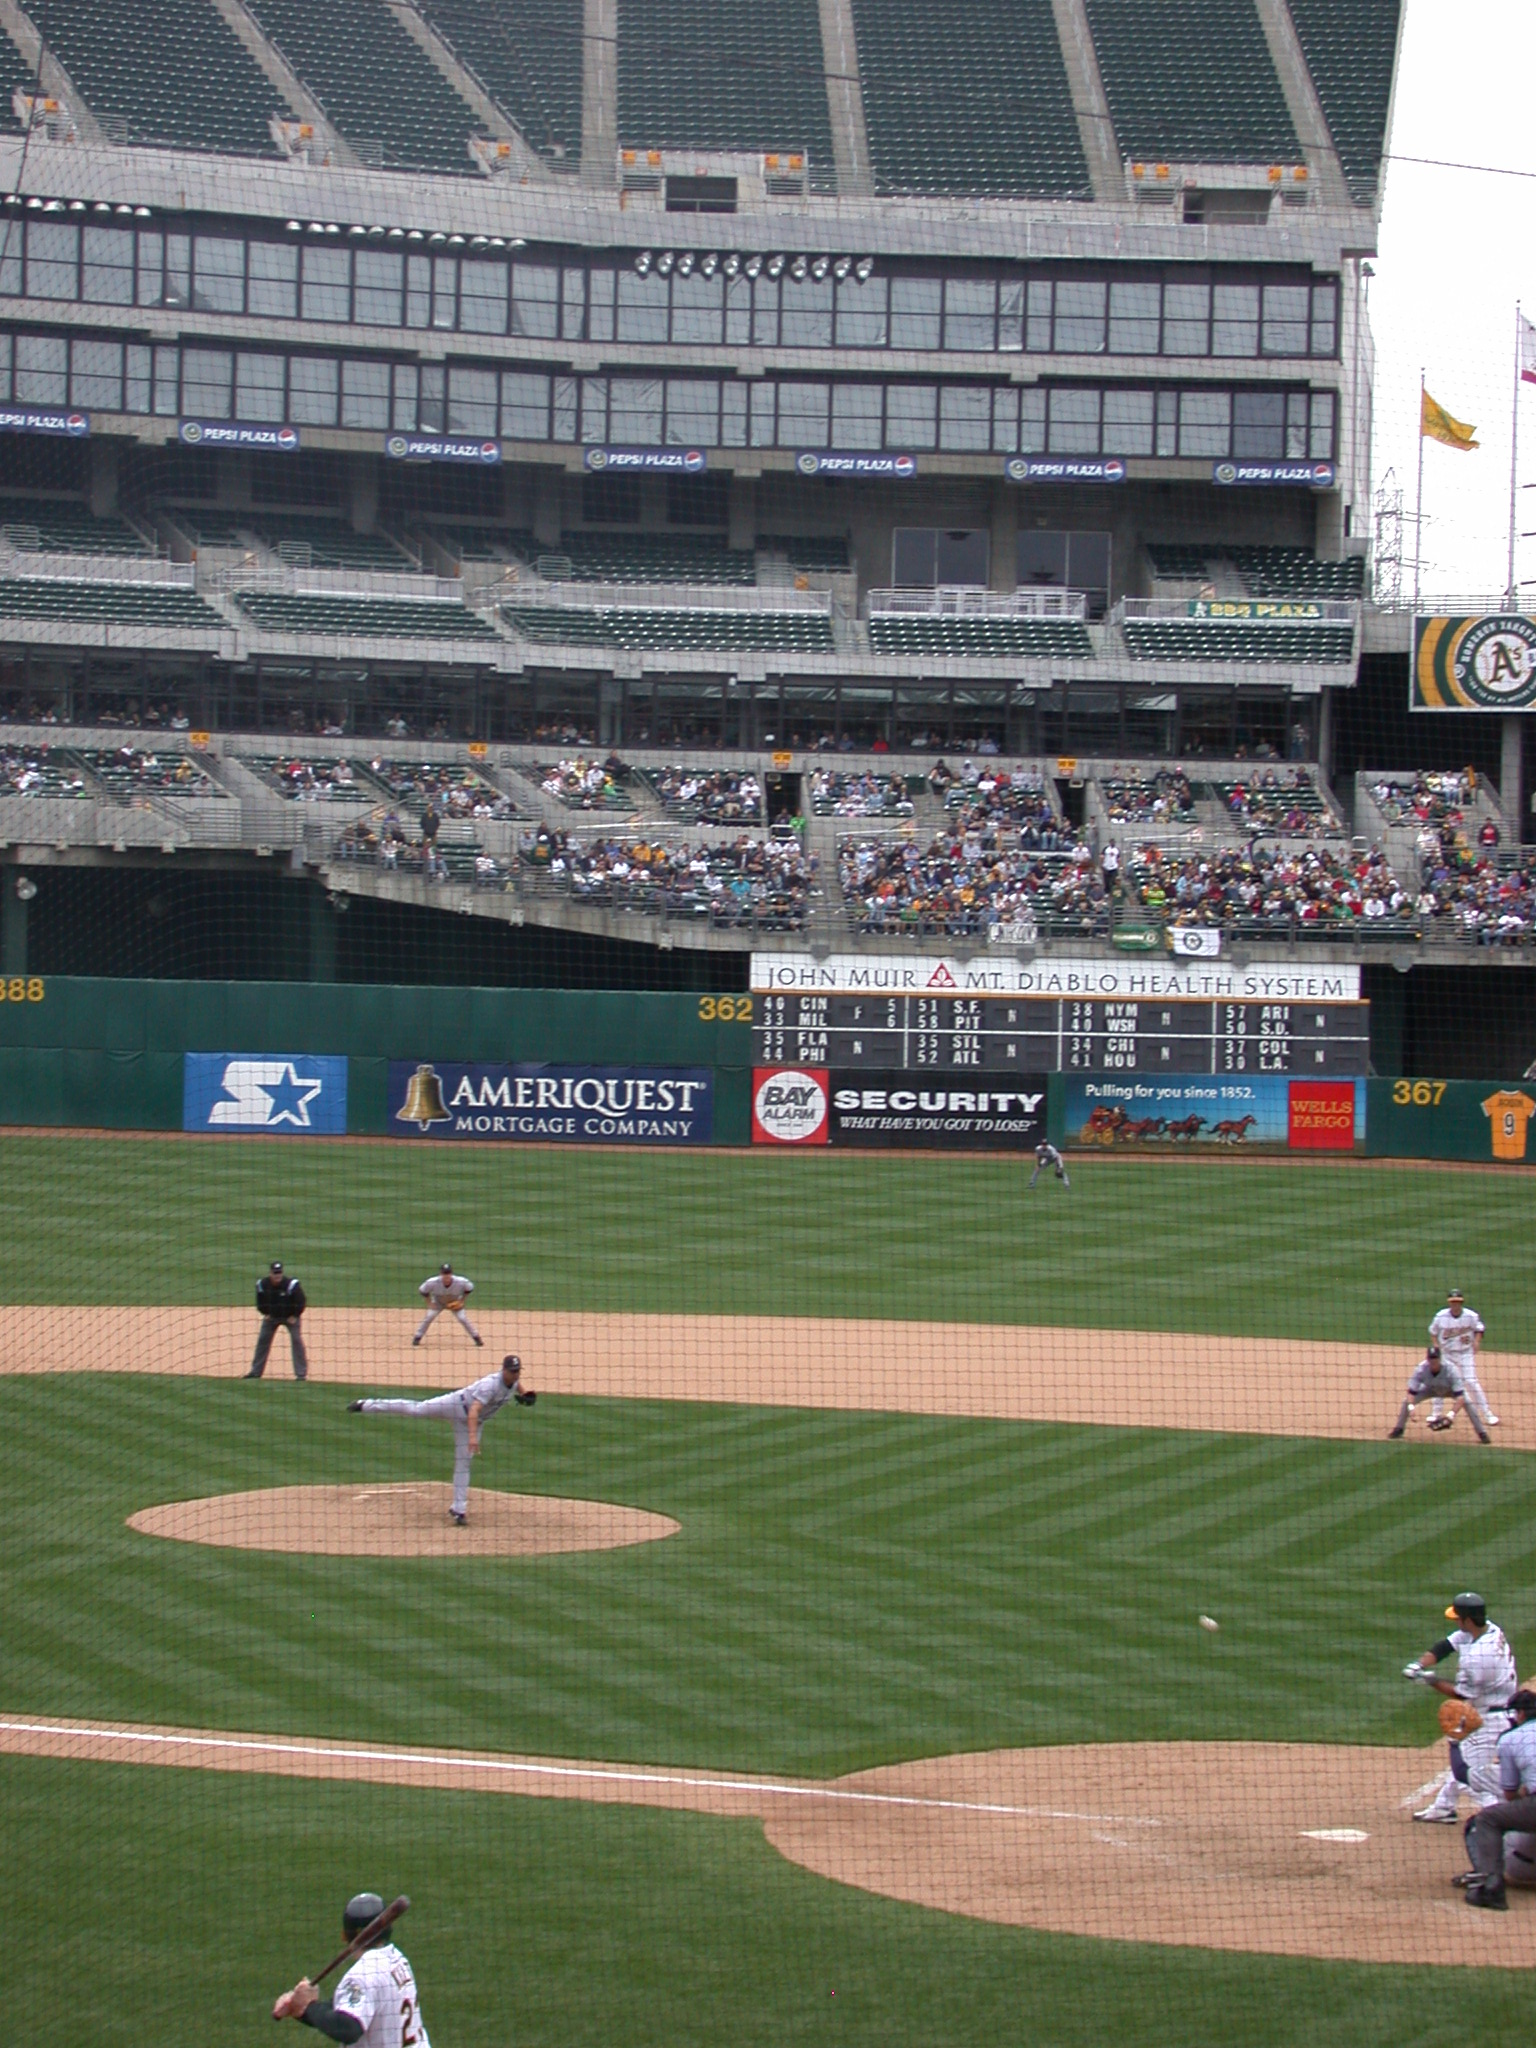 baseball players are playing baseball on a baseball field